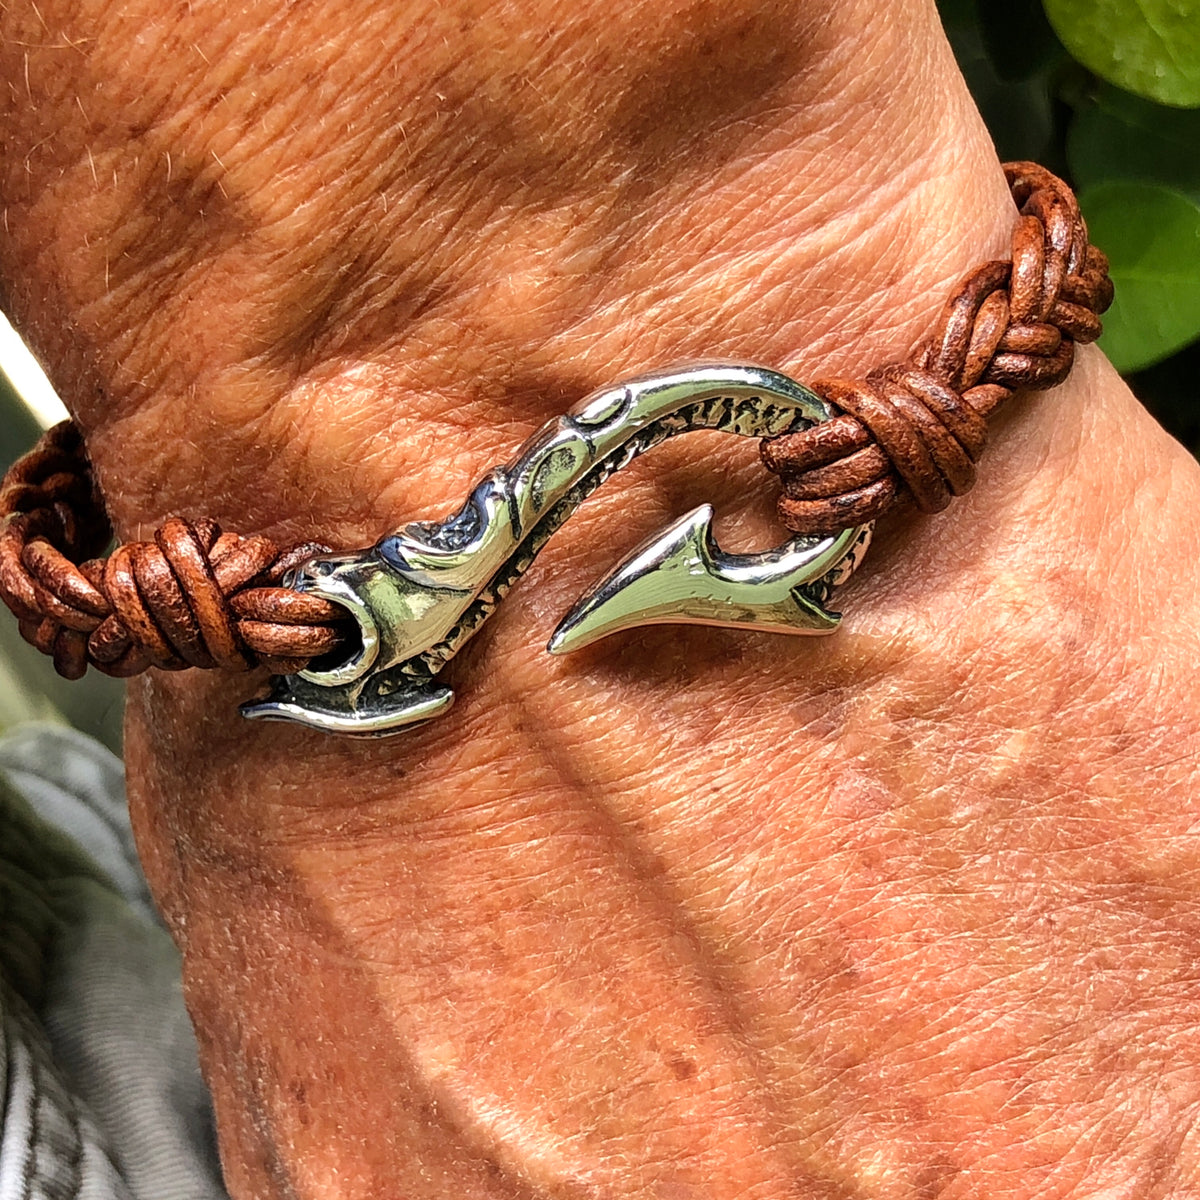 Leather & Sterling Silver Fish Hook Bracelet